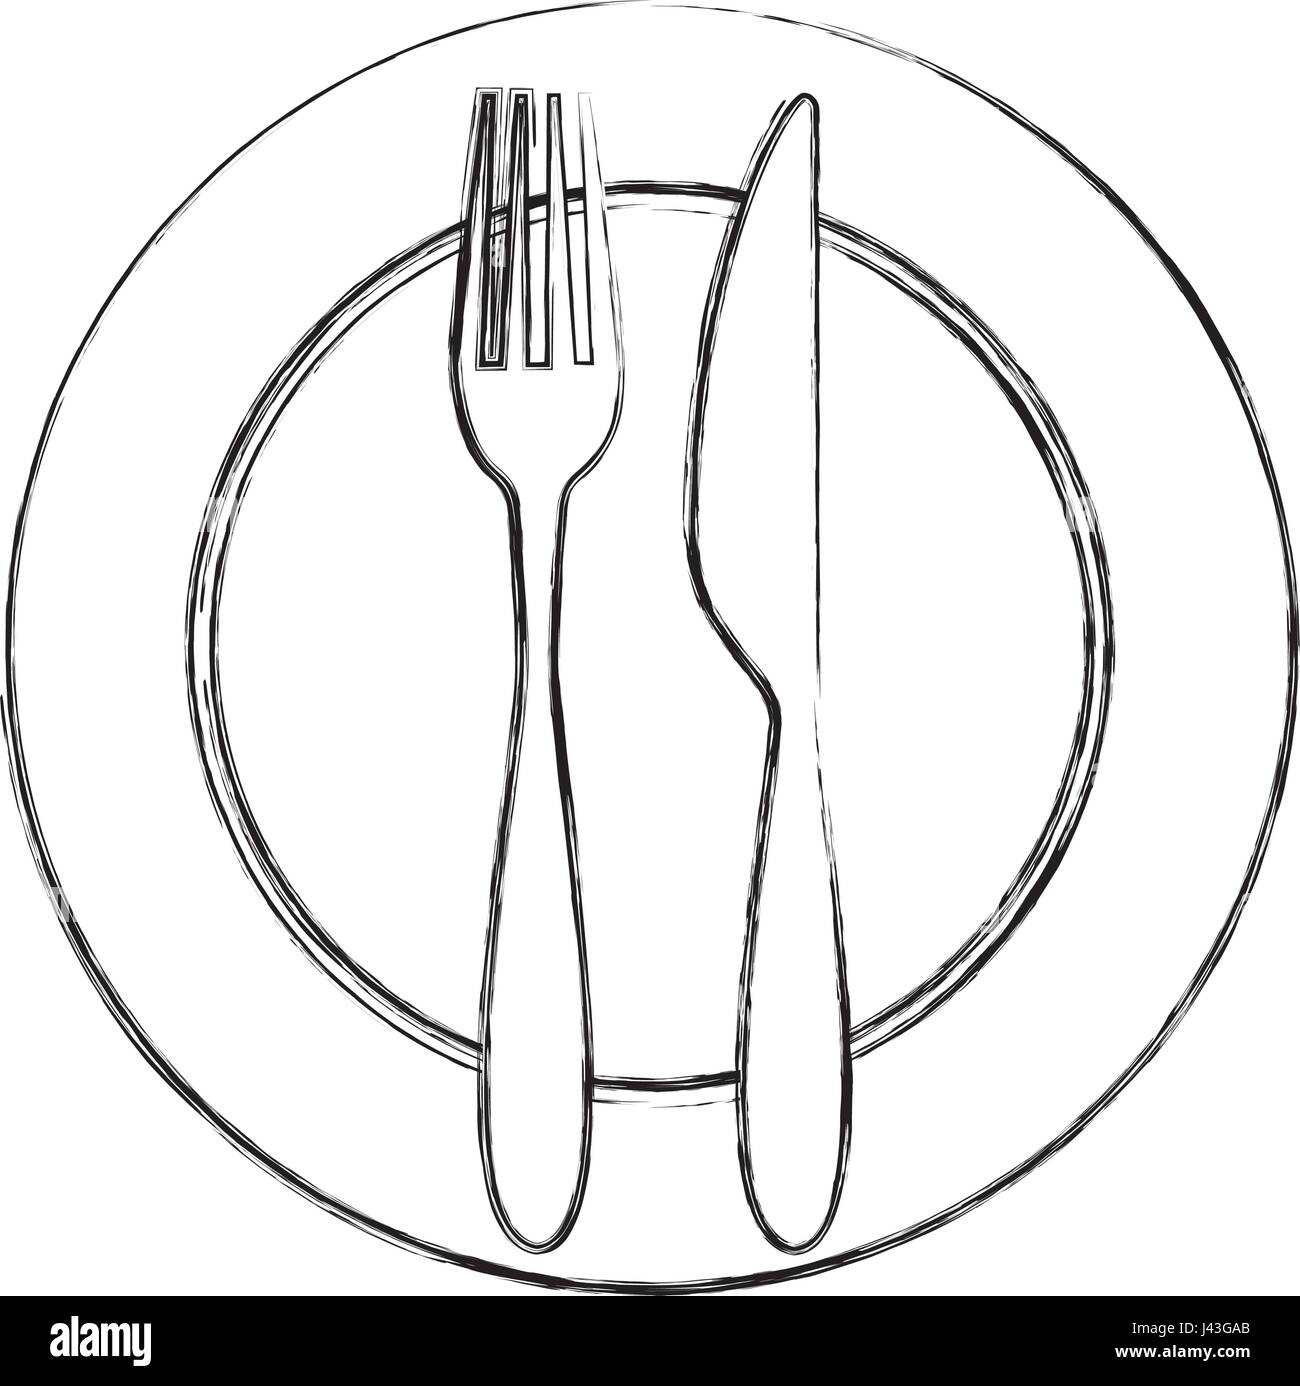 Gabel und Messer mit Teller Besteck Stock-Vektorgrafik - Alamy